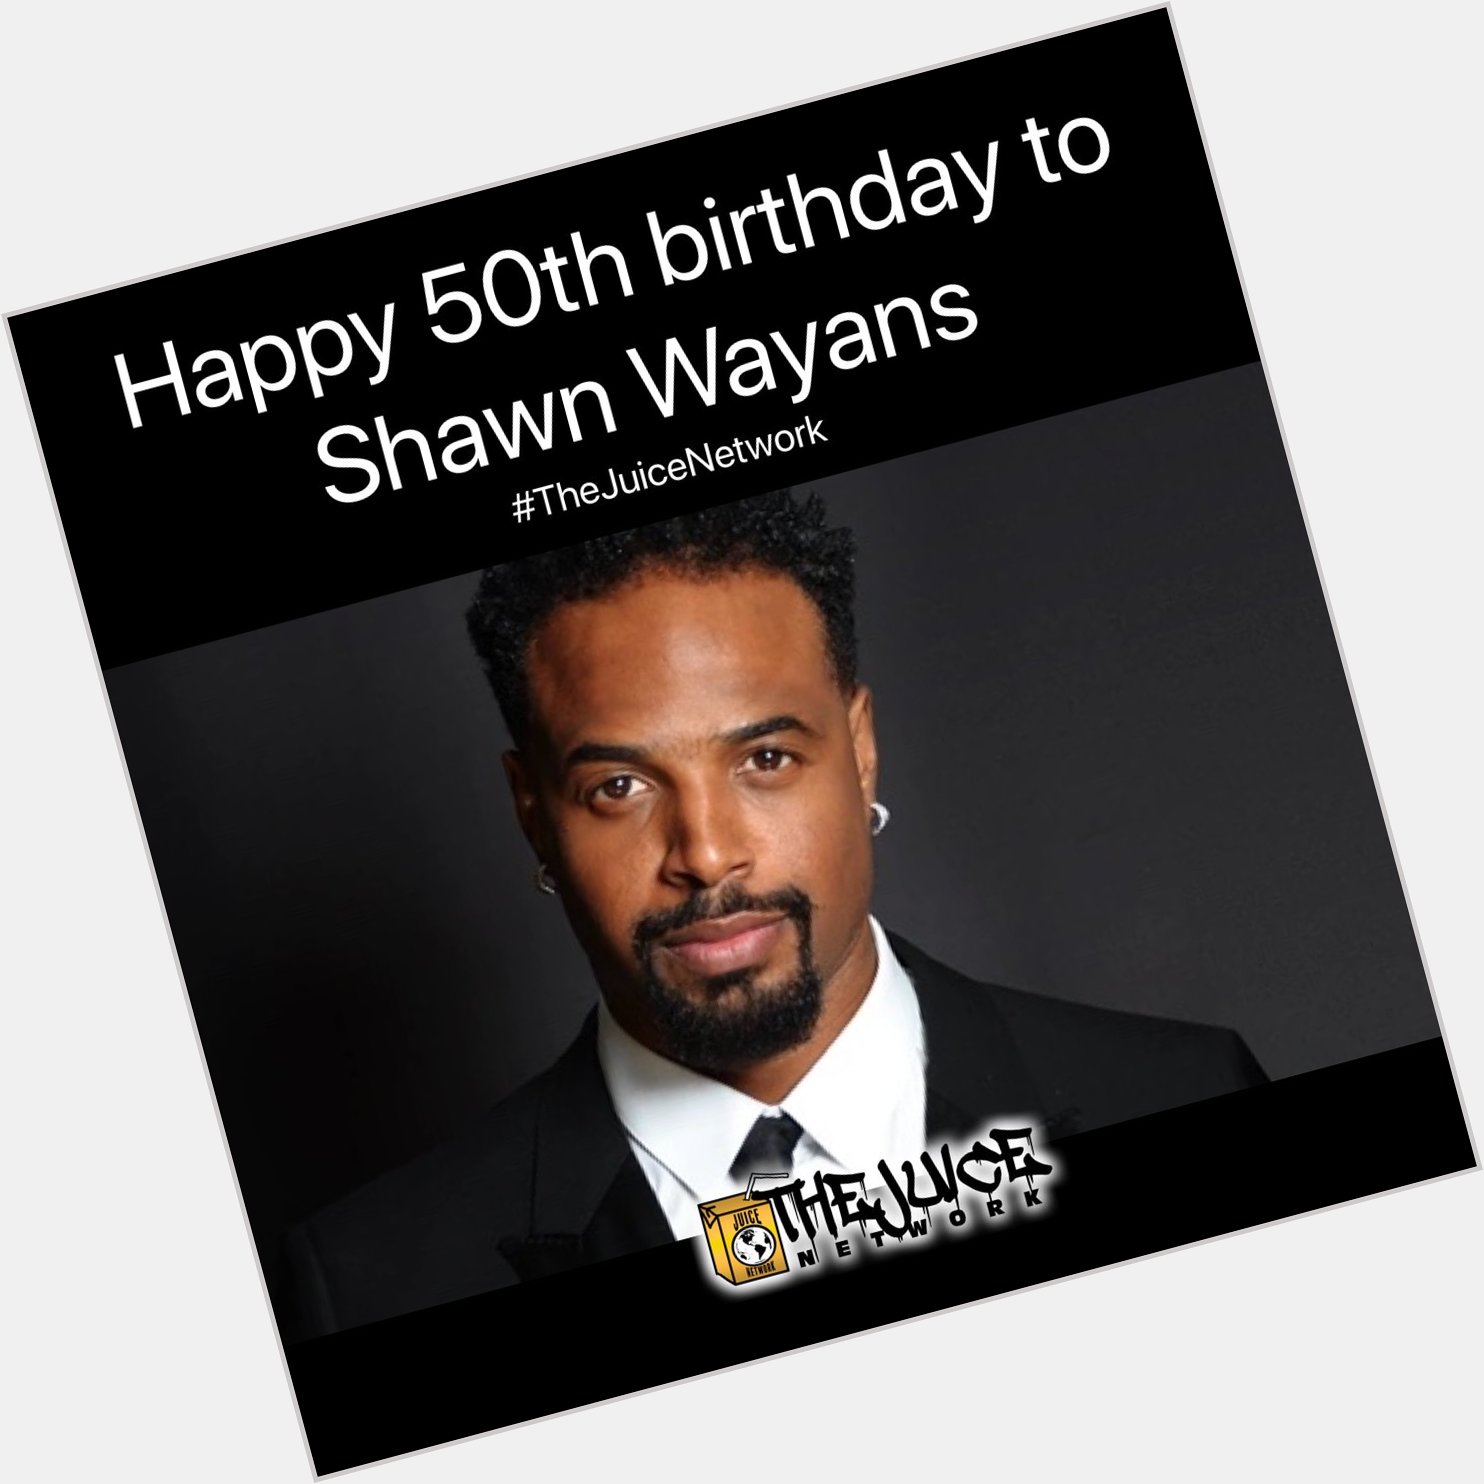 Wishing Shawn Wayans a happy birthday!   